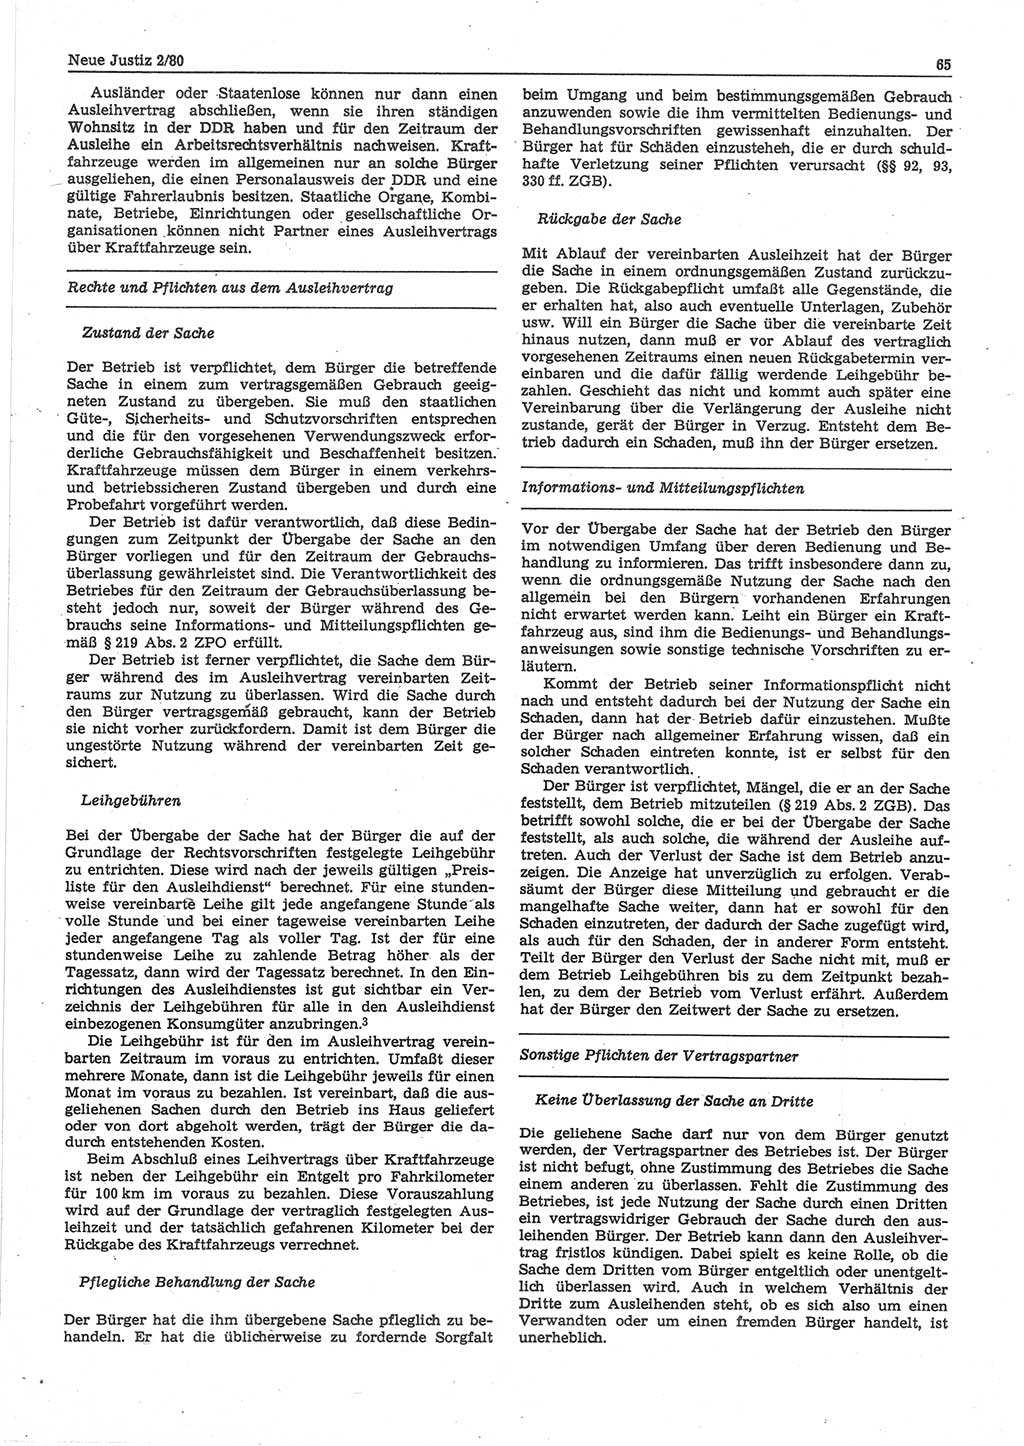 Neue Justiz (NJ), Zeitschrift für sozialistisches Recht und Gesetzlichkeit [Deutsche Demokratische Republik (DDR)], 34. Jahrgang 1980, Seite 65 (NJ DDR 1980, S. 65)